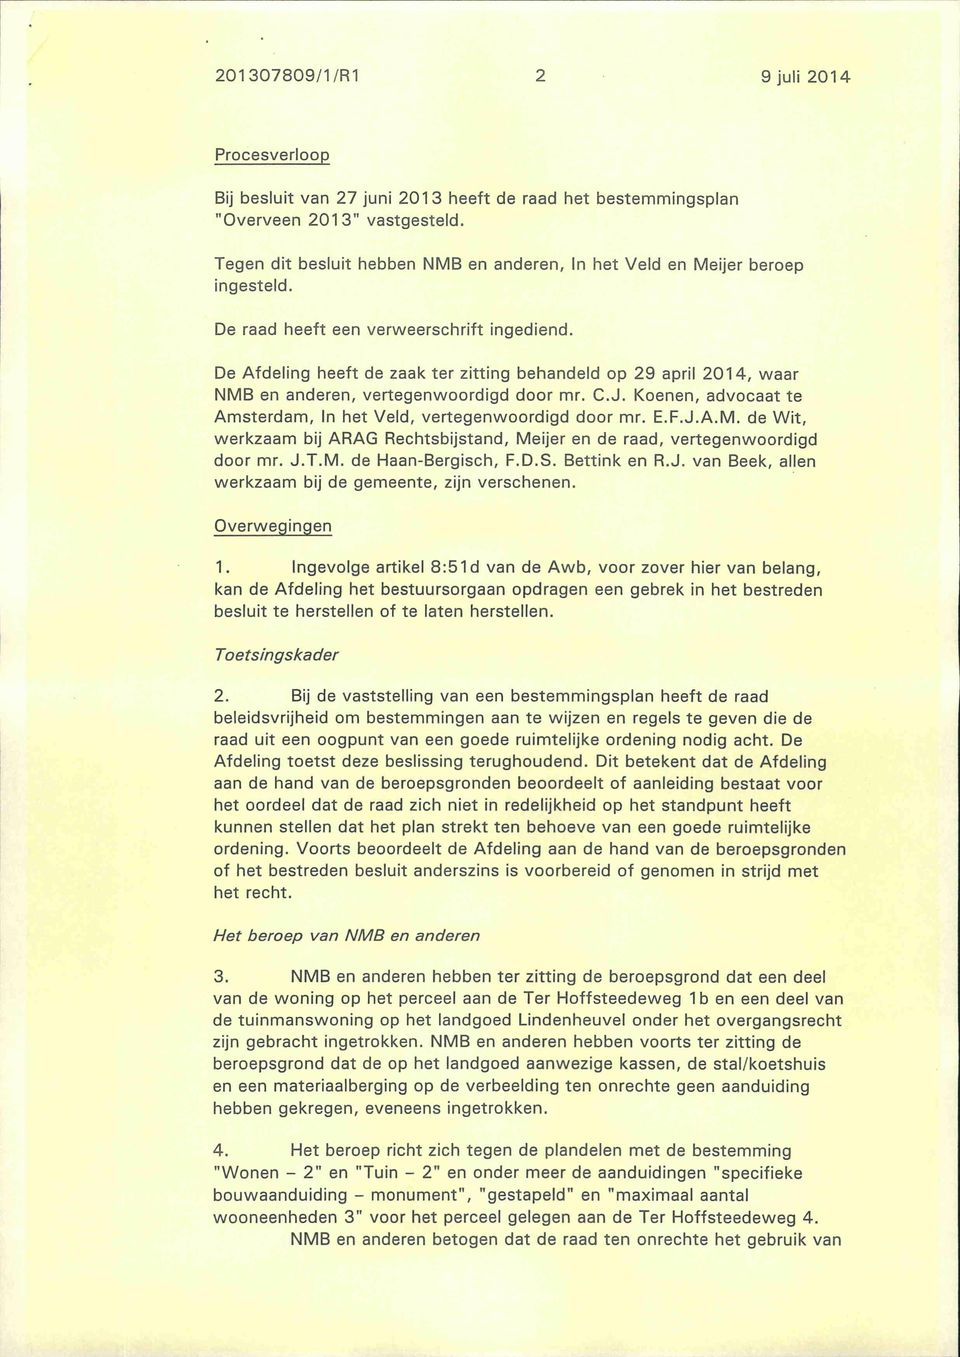 De Afdeling heeft de zaak ter zitting behandeld op 29 april 2014, waar NMB en anderen, vertegenwoordigd door mr. C.J. Koenen, advocaat te Amsterdam, In het Veld, vertegenwoordigd door mr. E.F.J.A.M. de Wit, werkzaam bij ARAG Rechtsbijstand, Meijer en de raad, vertegenwoordigd door mr.